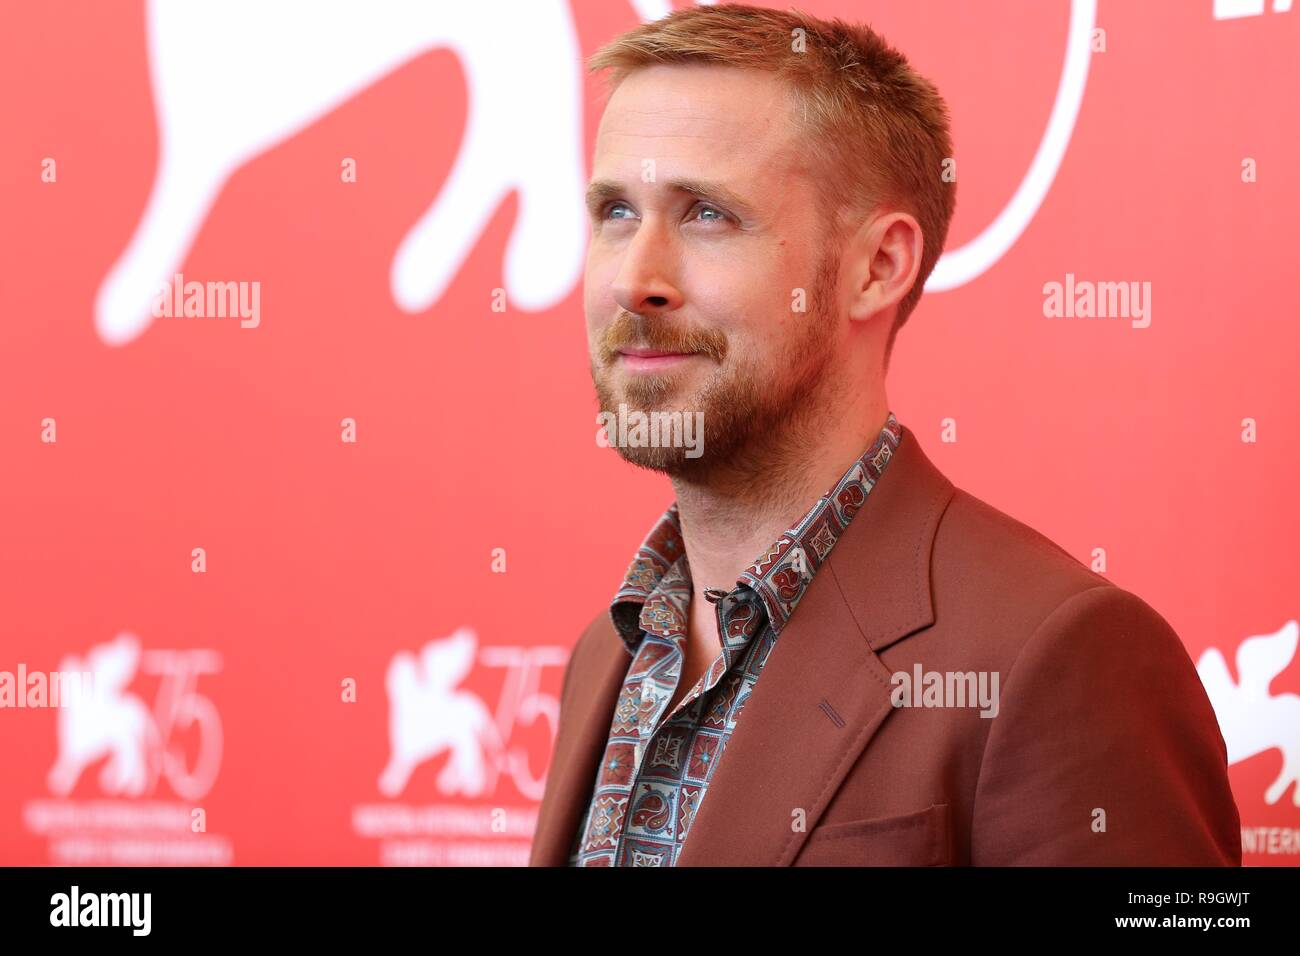 Venise, Italie - 29 août, 2018 : Ryan Gosling assiste à la première 'homme' photocall au cours de la 75e Festival International du Film de Venise (Ph : Mickael Chavet) Banque D'Images